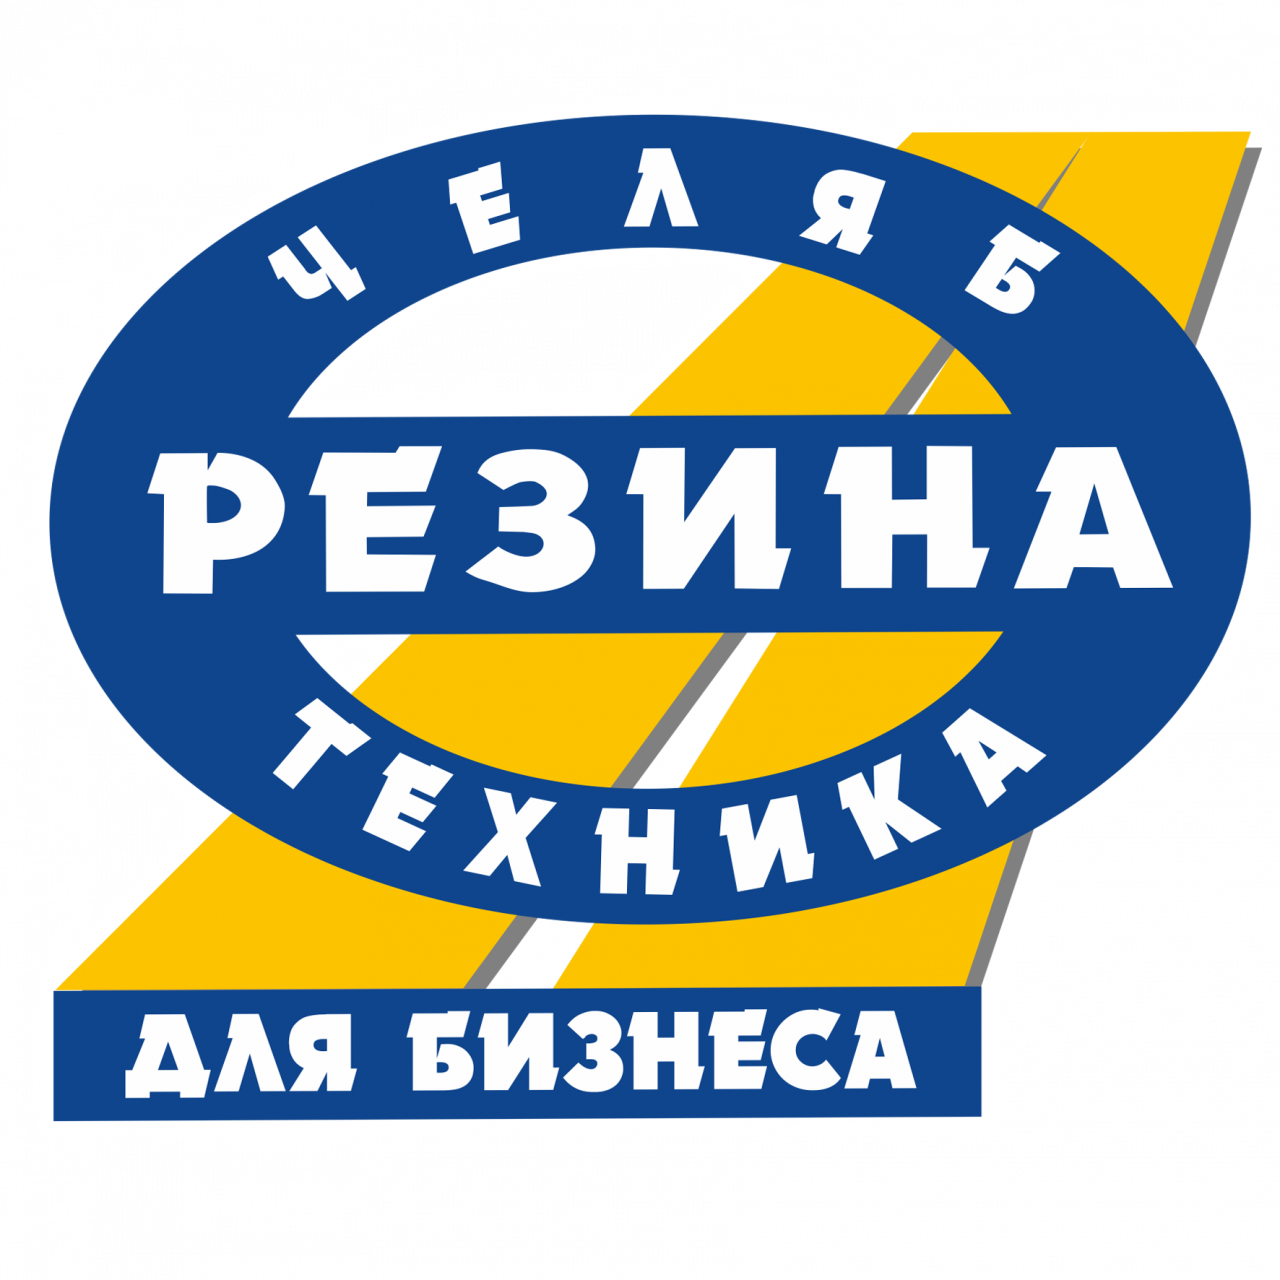 Логотип Челябрезинатехника для бизнеса